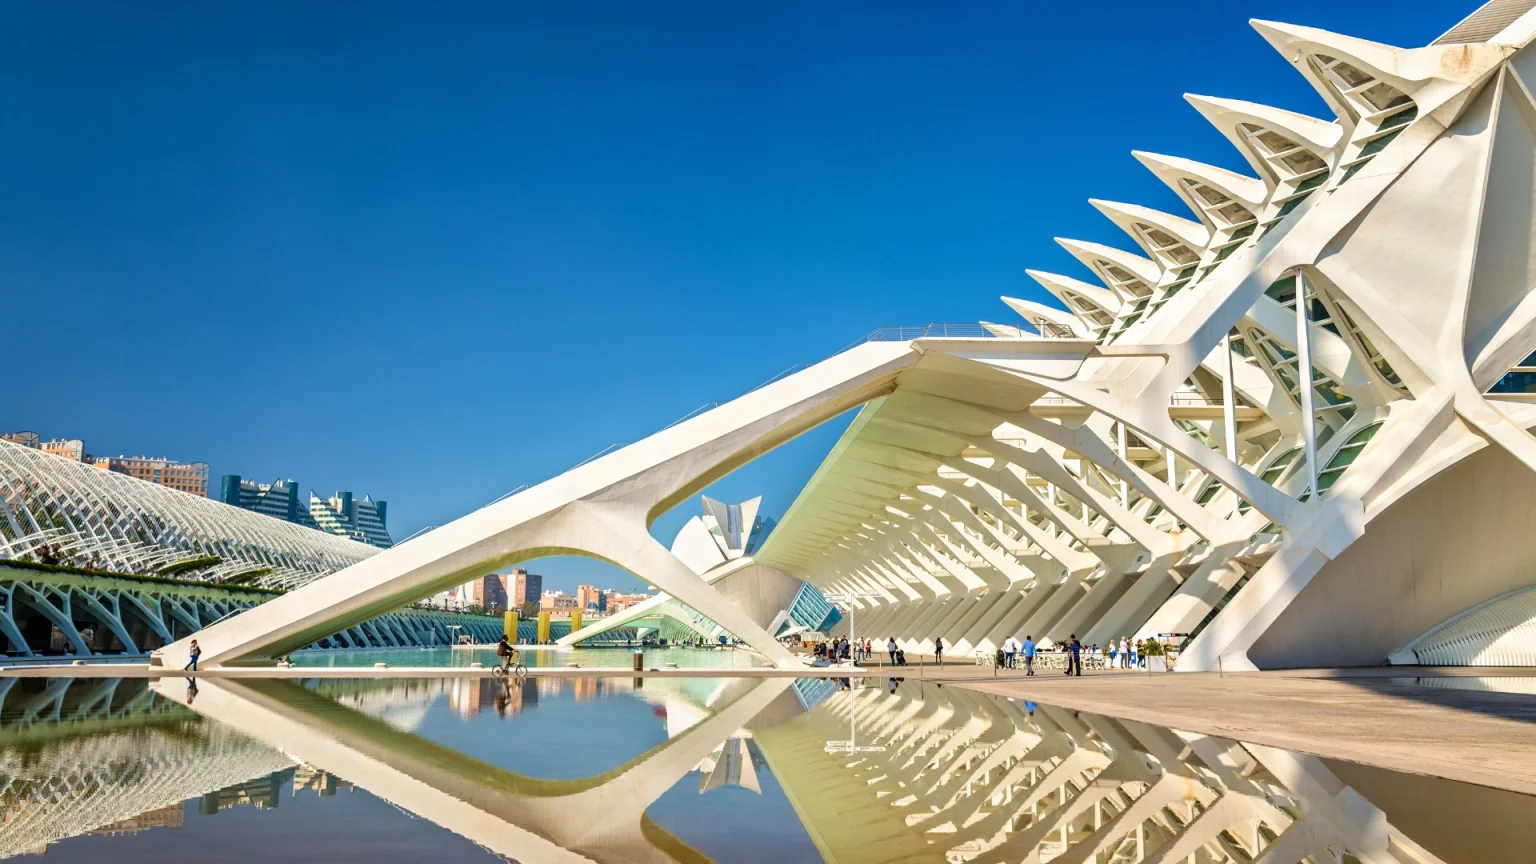 Ciudad de las Artes y las Ciencias a Valencia (Calatrava)